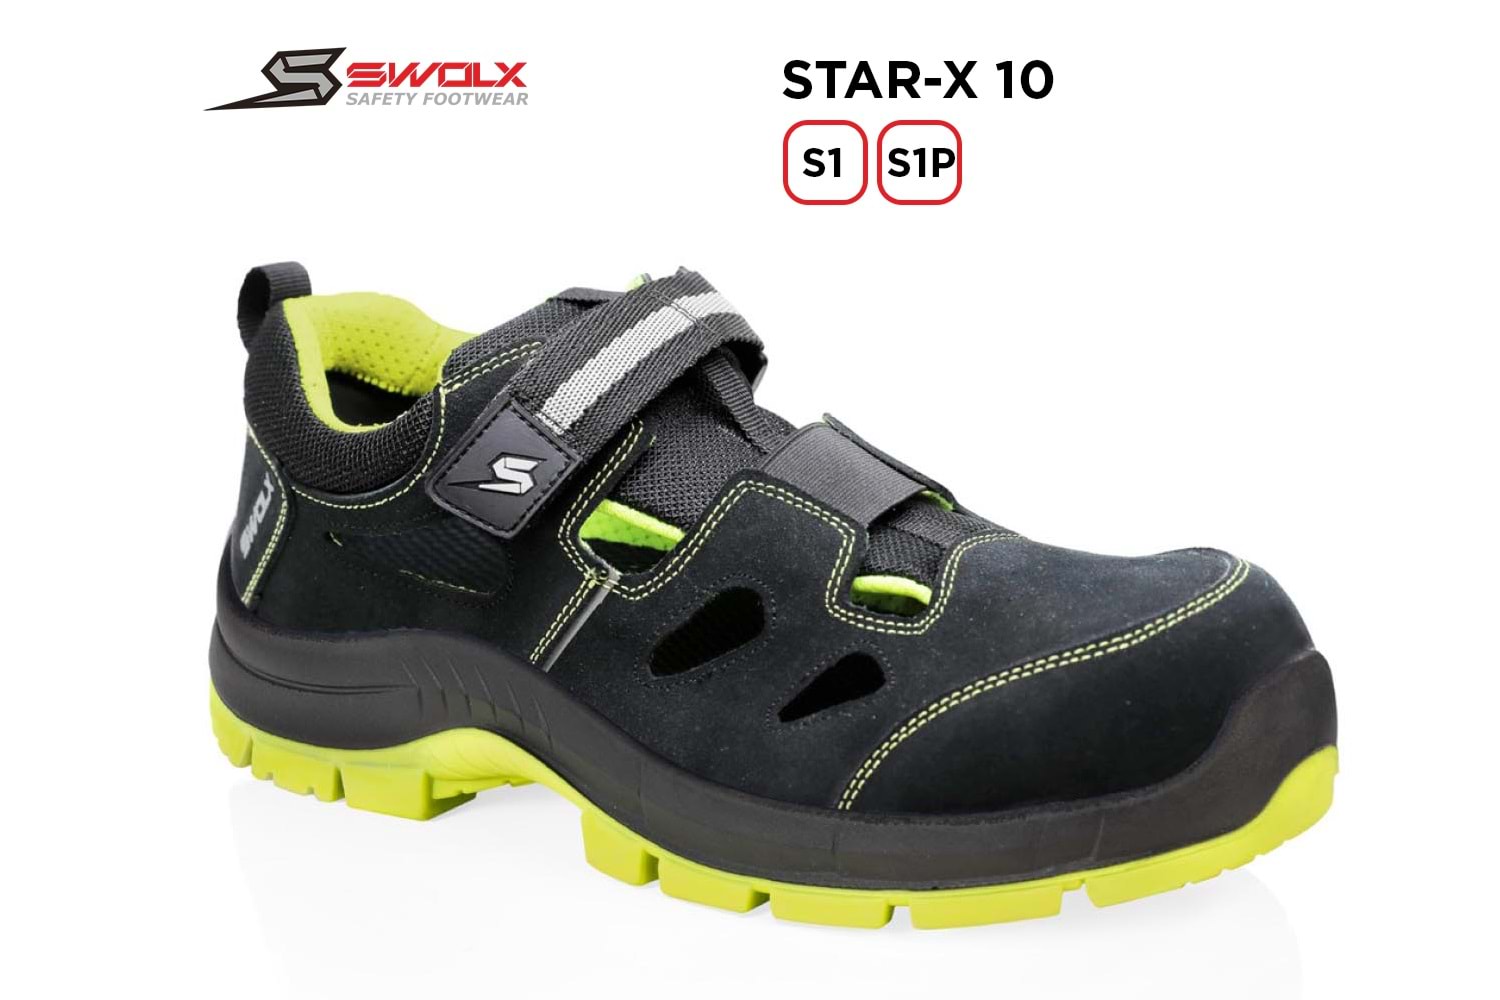 Swolx İş Ayakkabısı - Star-X 10 S1 - 43